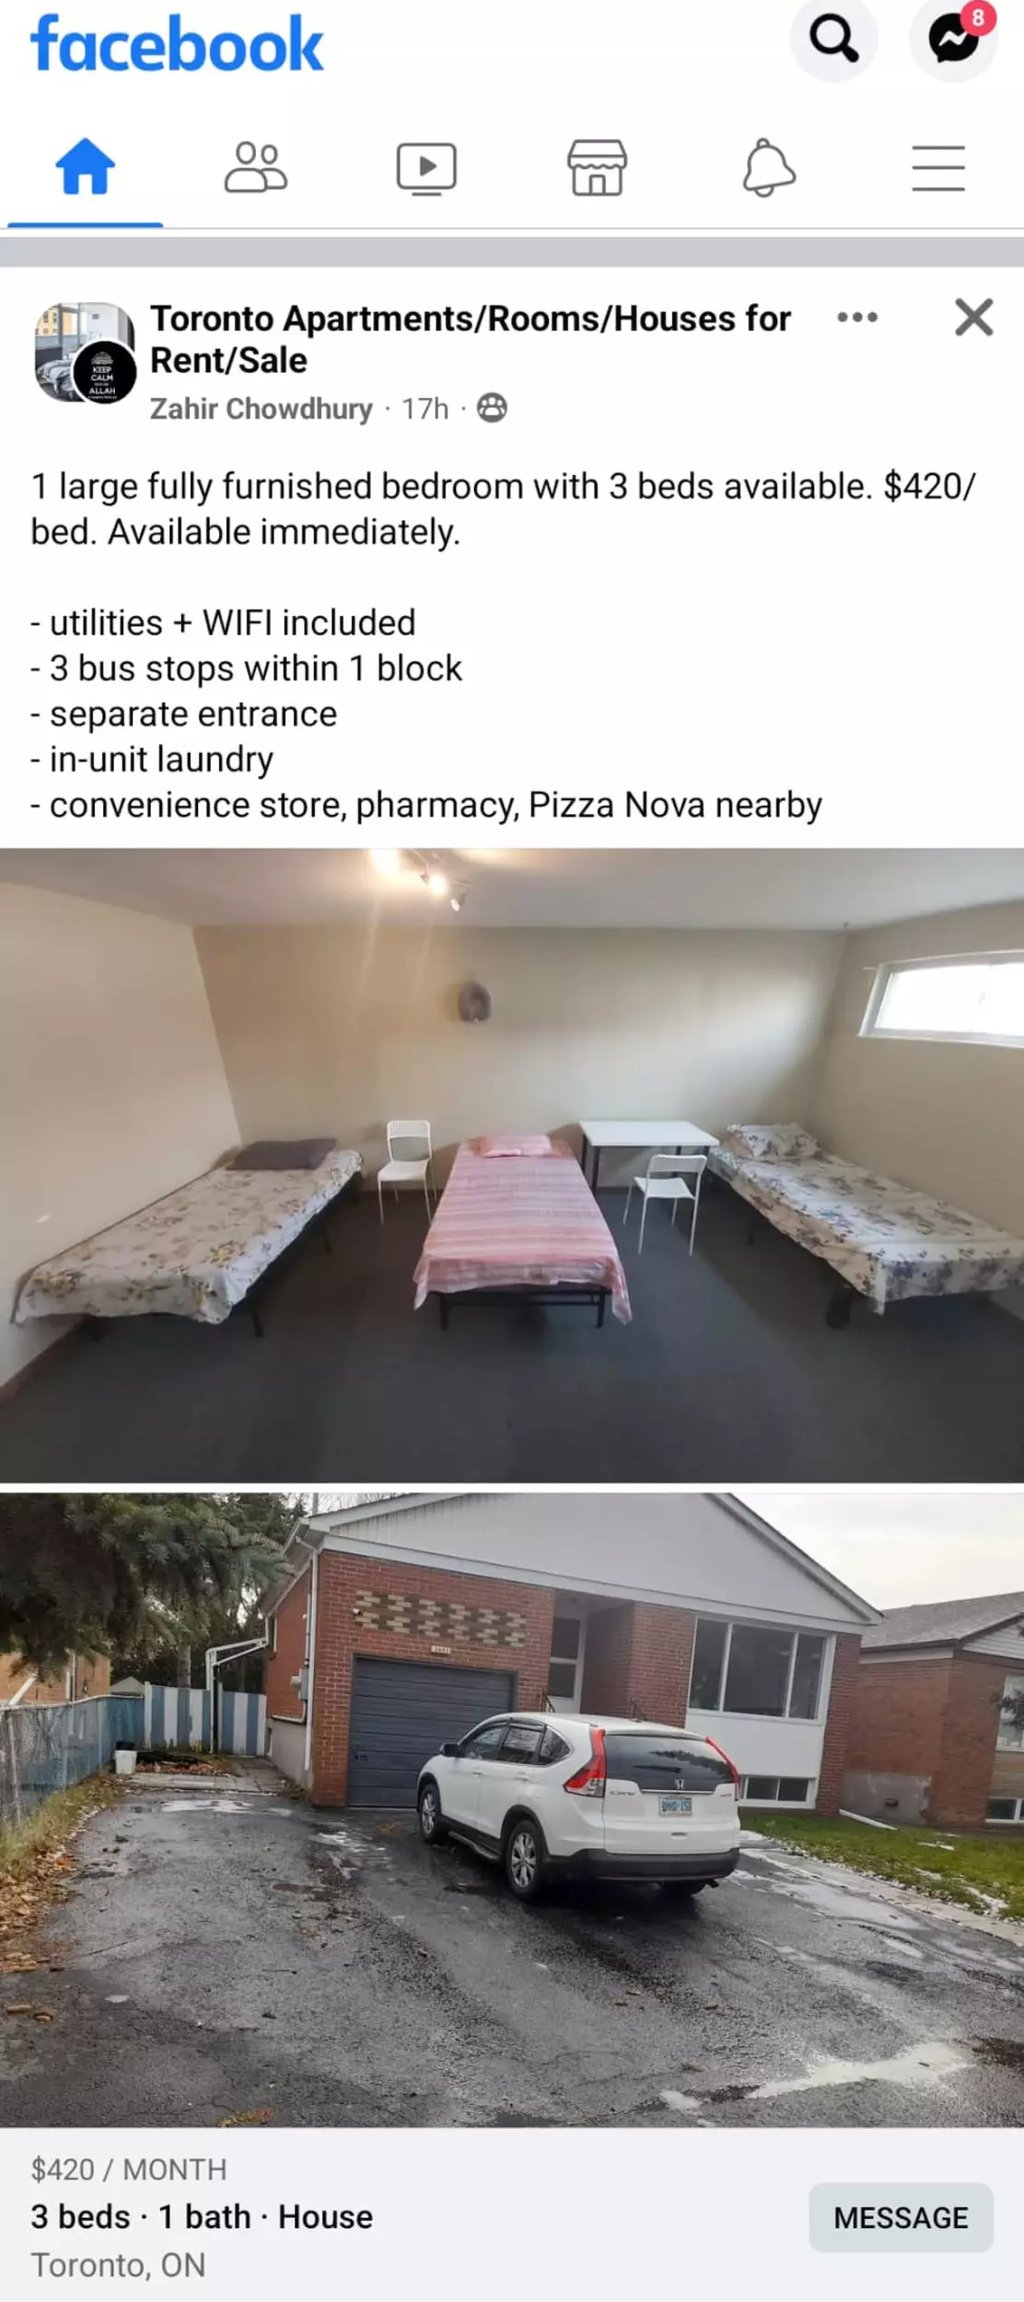 Il profite de la crise du logement et tente de louer 3 lits dans une même chambre pour 420 $ chacun